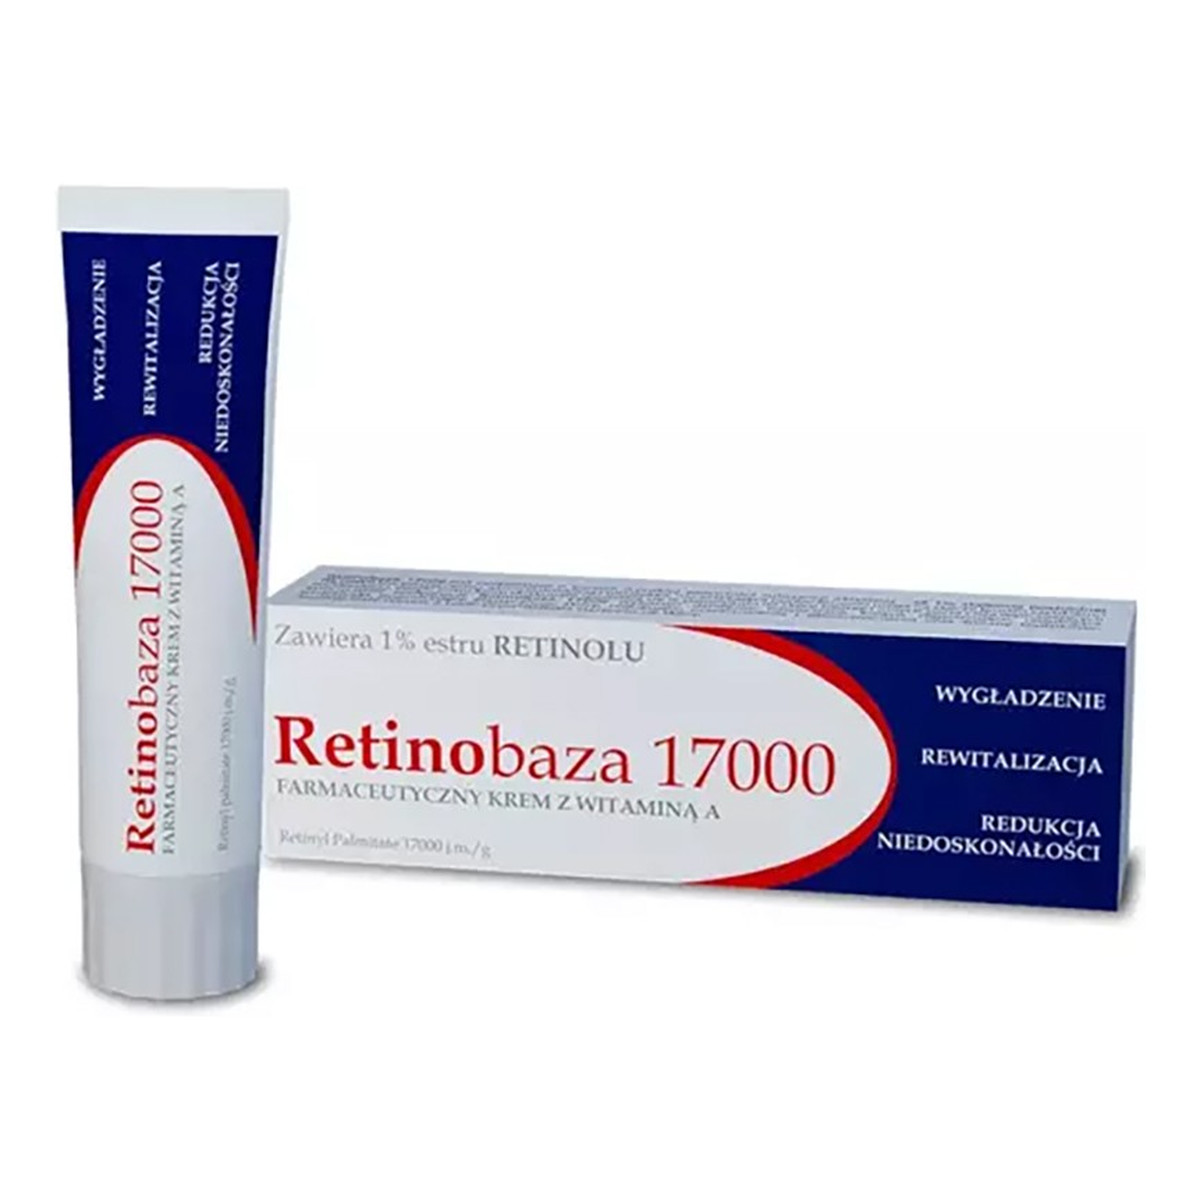 Retinobaza RETINOBAZA 17000 Krem farmaceutyczny z witaminą A 30g